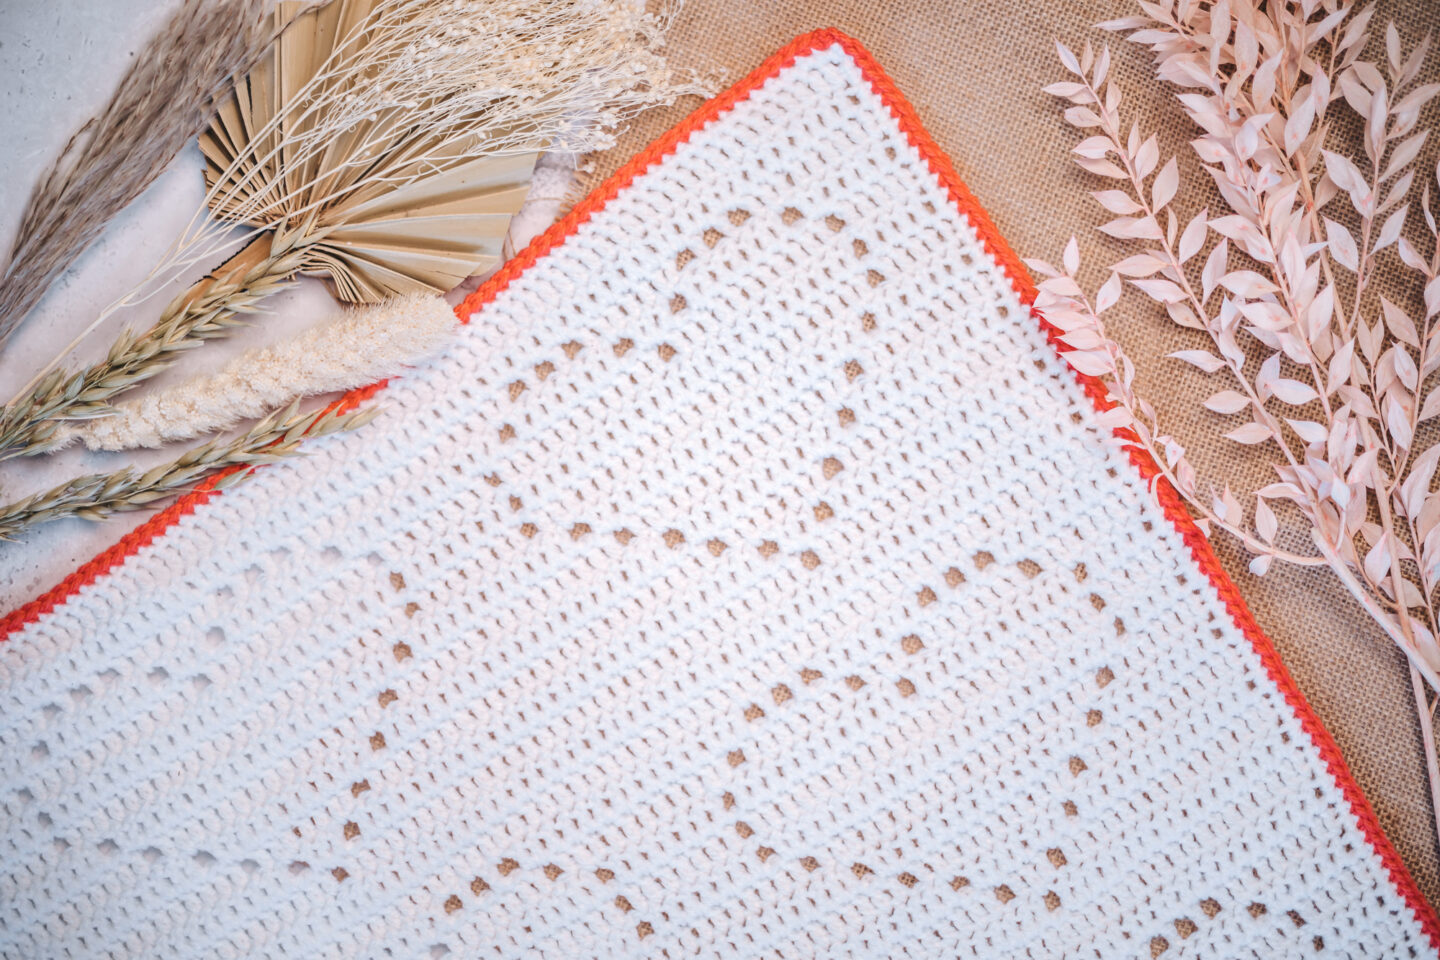 My Love Crochet Blanket Pattern